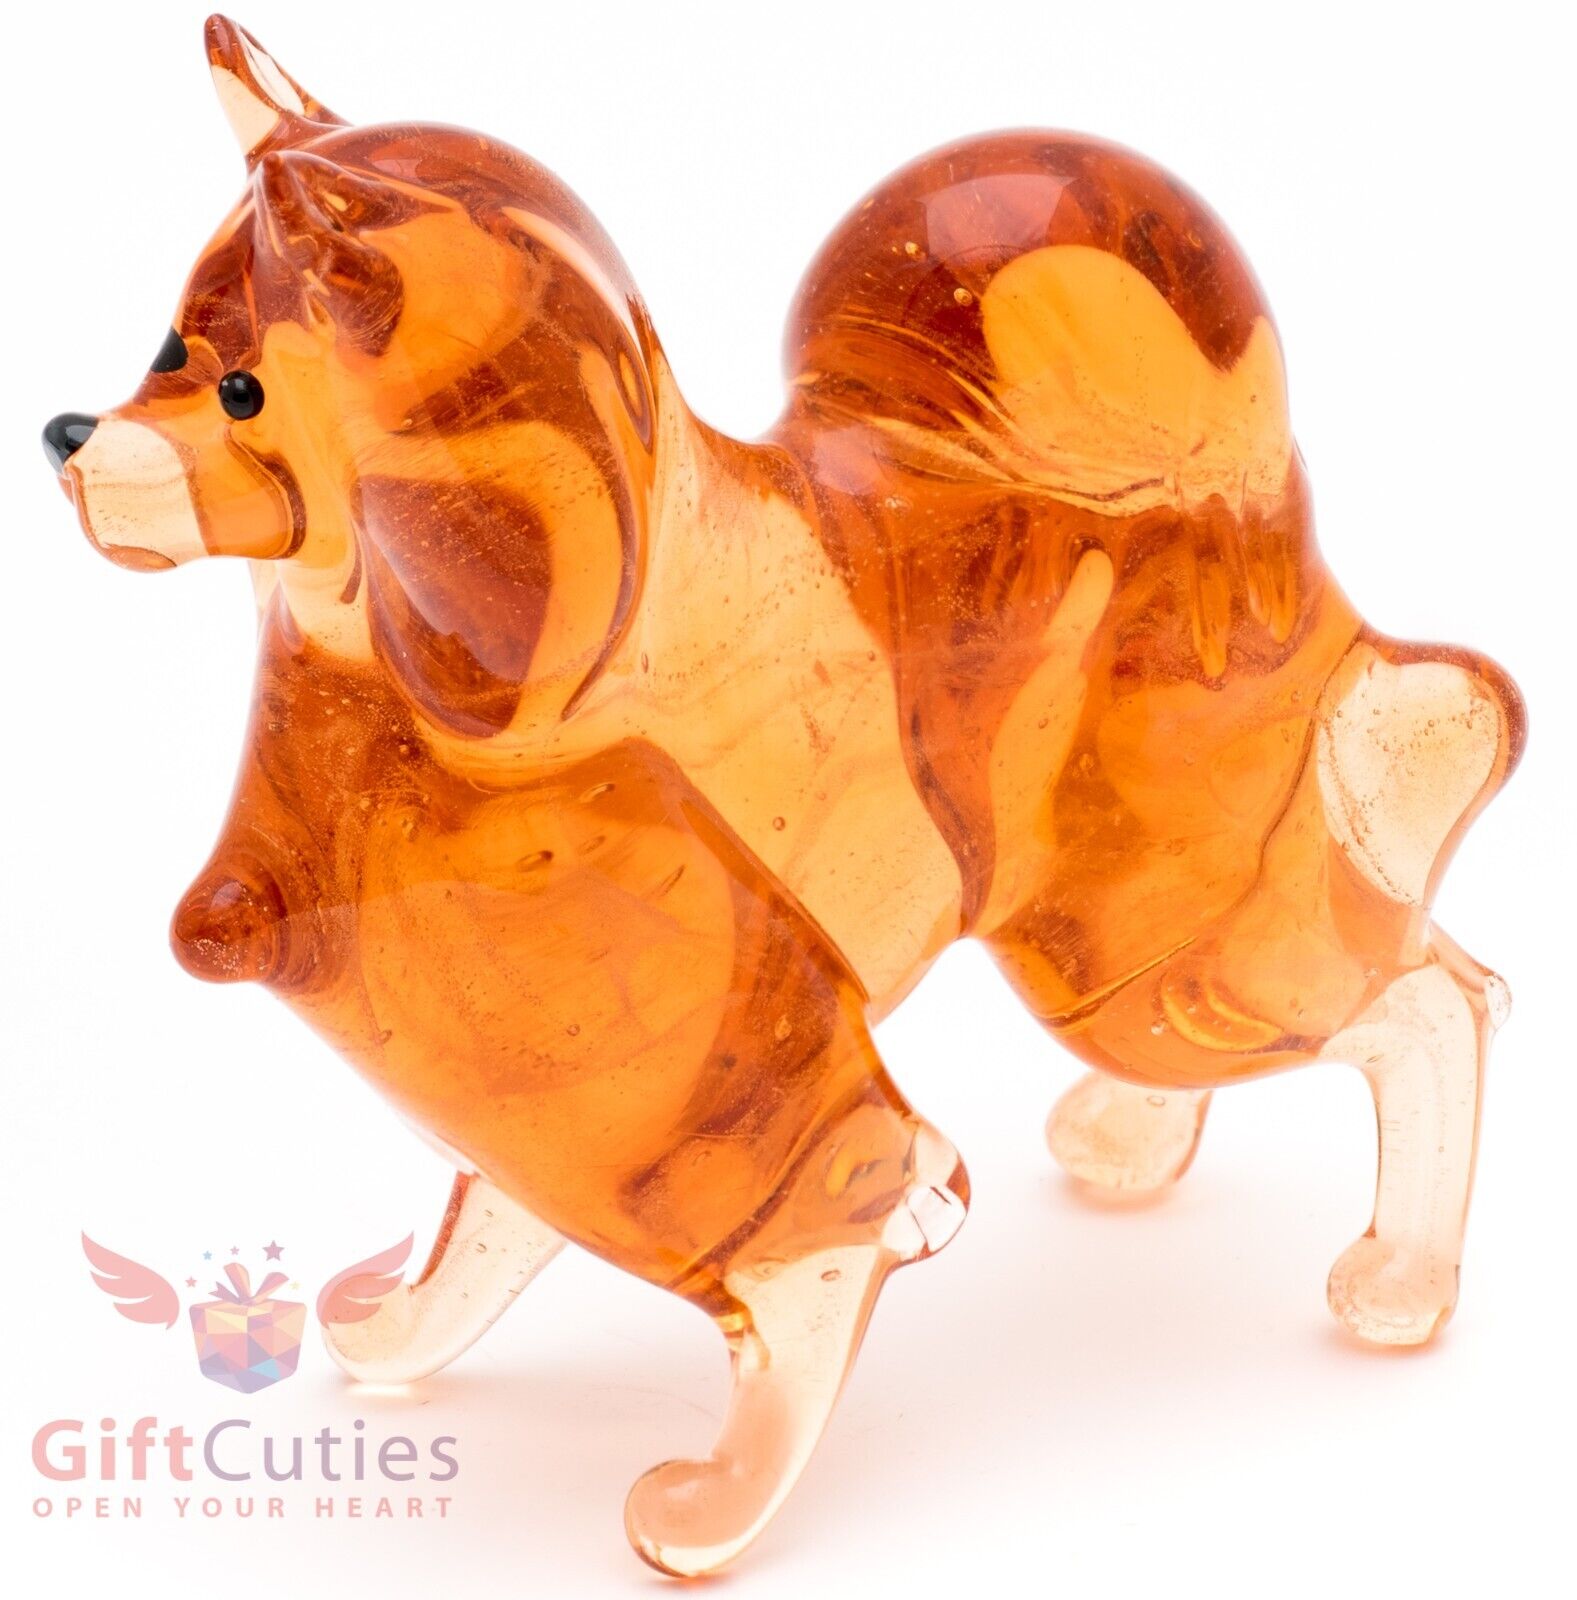 Art Blown Glass Figurine of the Pomeranian Spitz dog